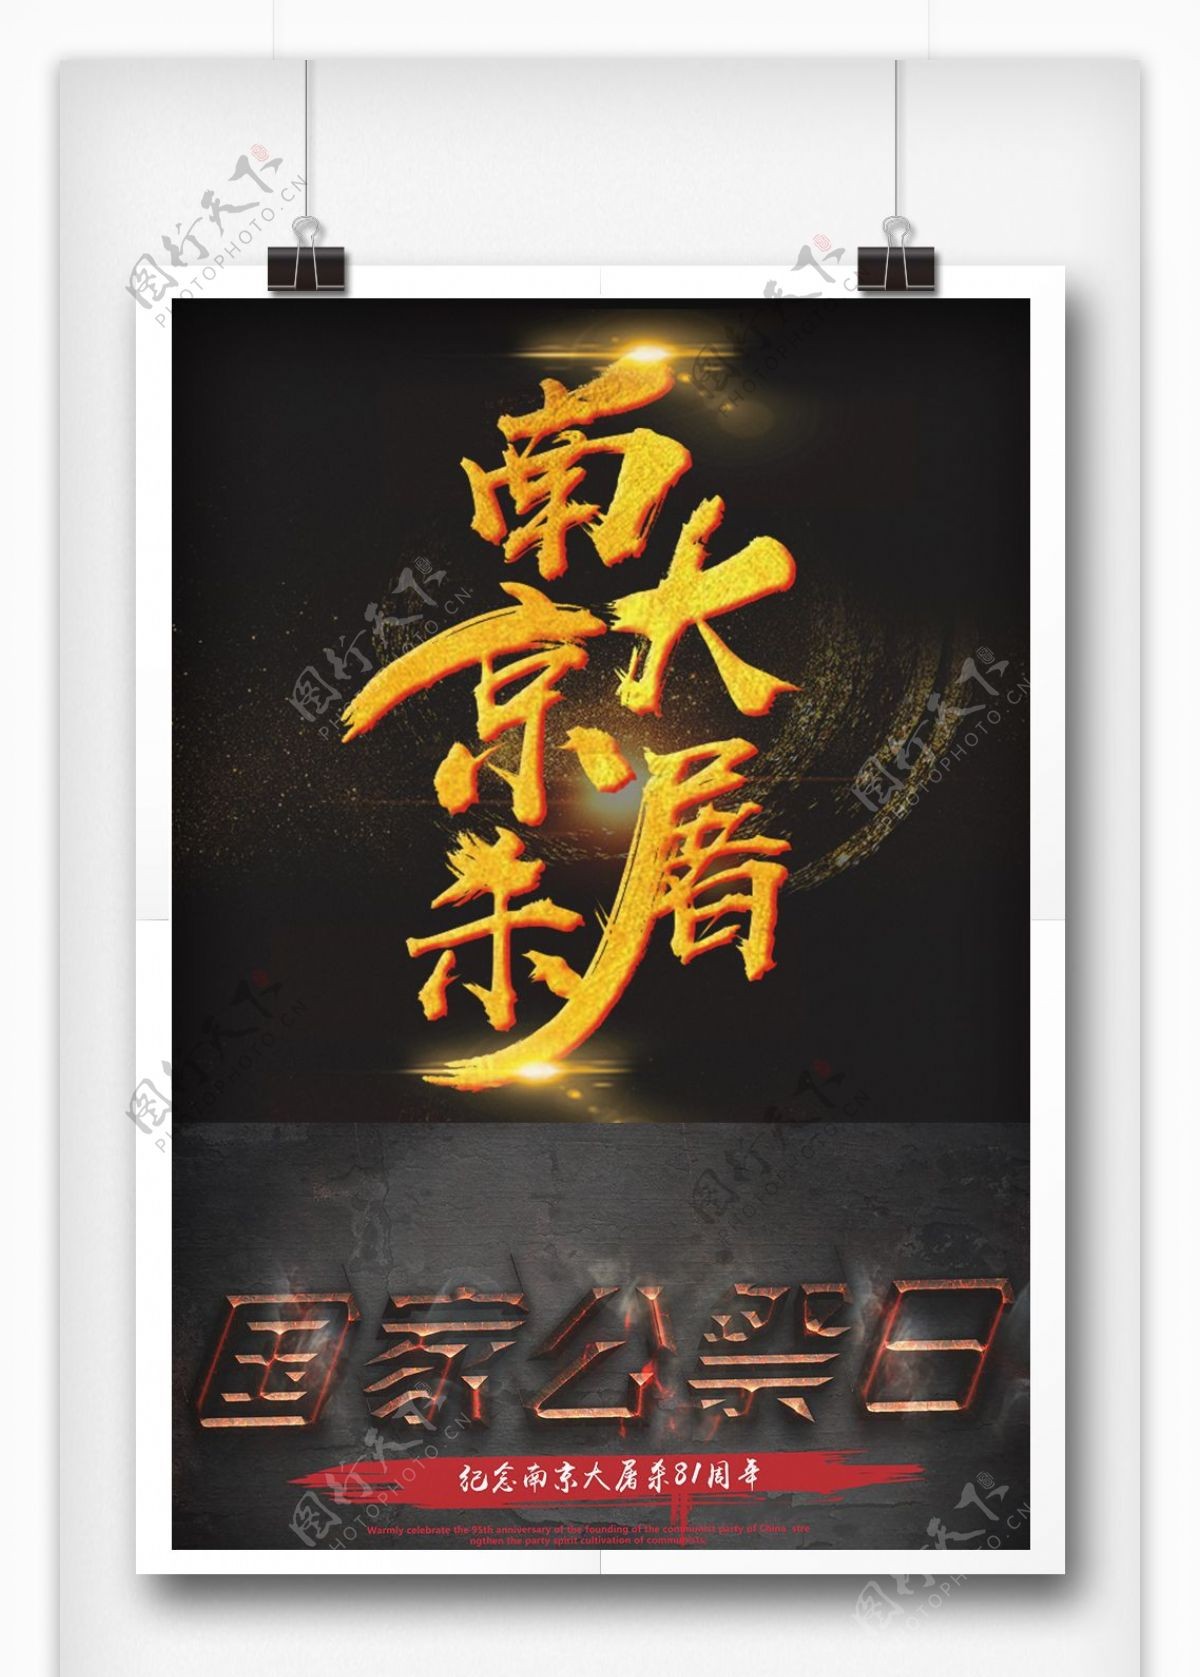 南京大屠杀字体设计字体排版设计元素